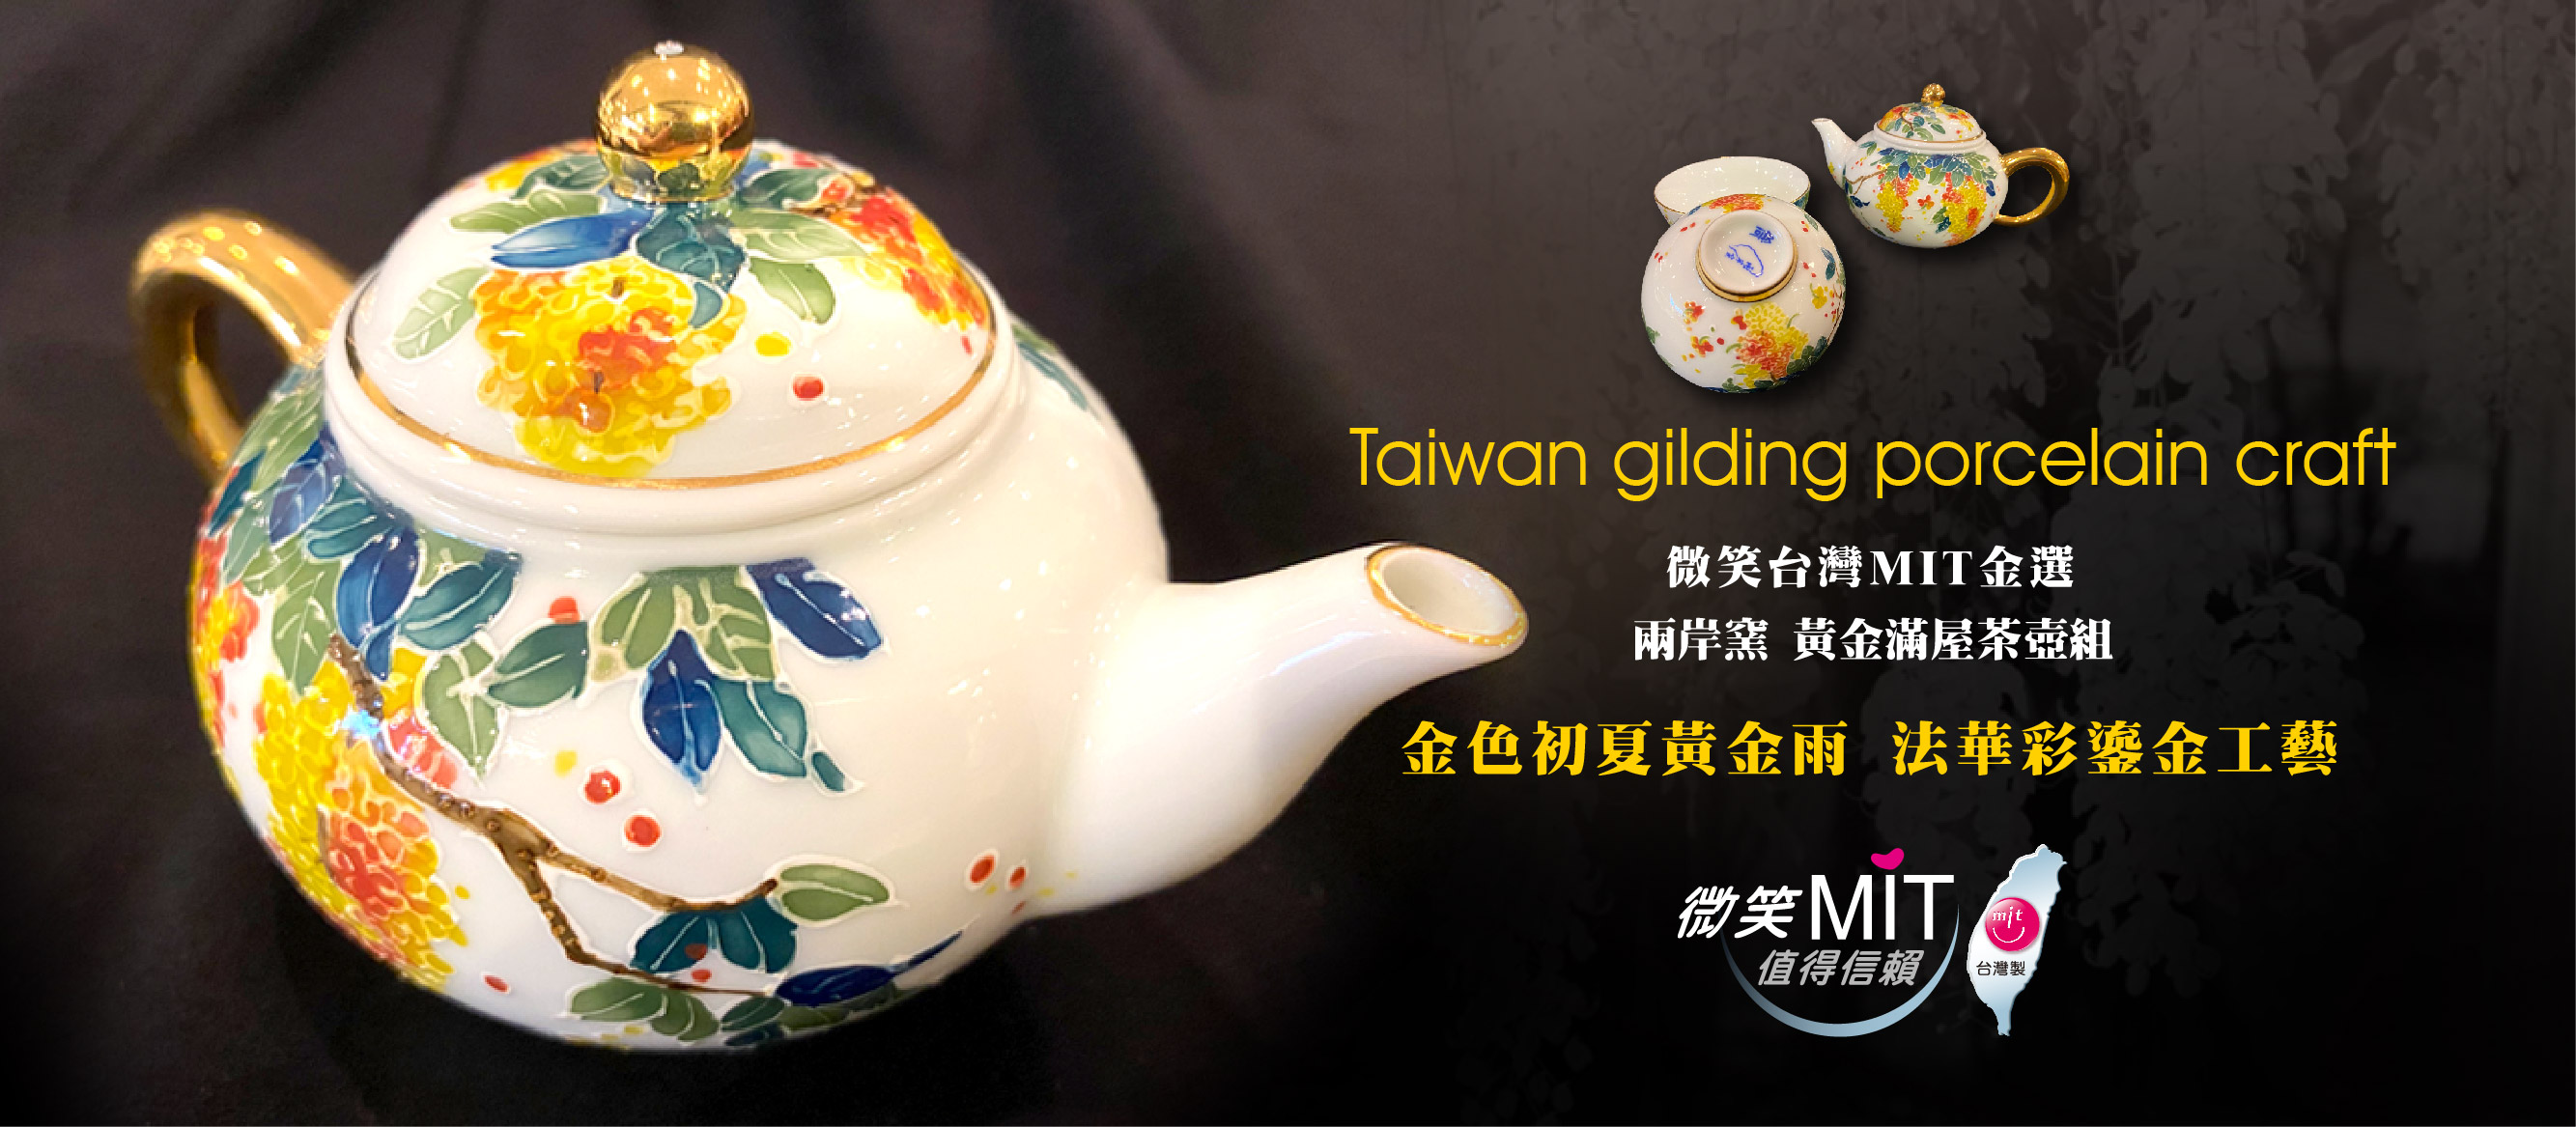 【微笑台灣MIT認證金選】兩岸窯 黃金滿屋茶壺組(1壺2杯) 台灣MIT認證 茶具組 Golden rain tree flowers teapot teacups set, Taiwan gilding porcelain craft